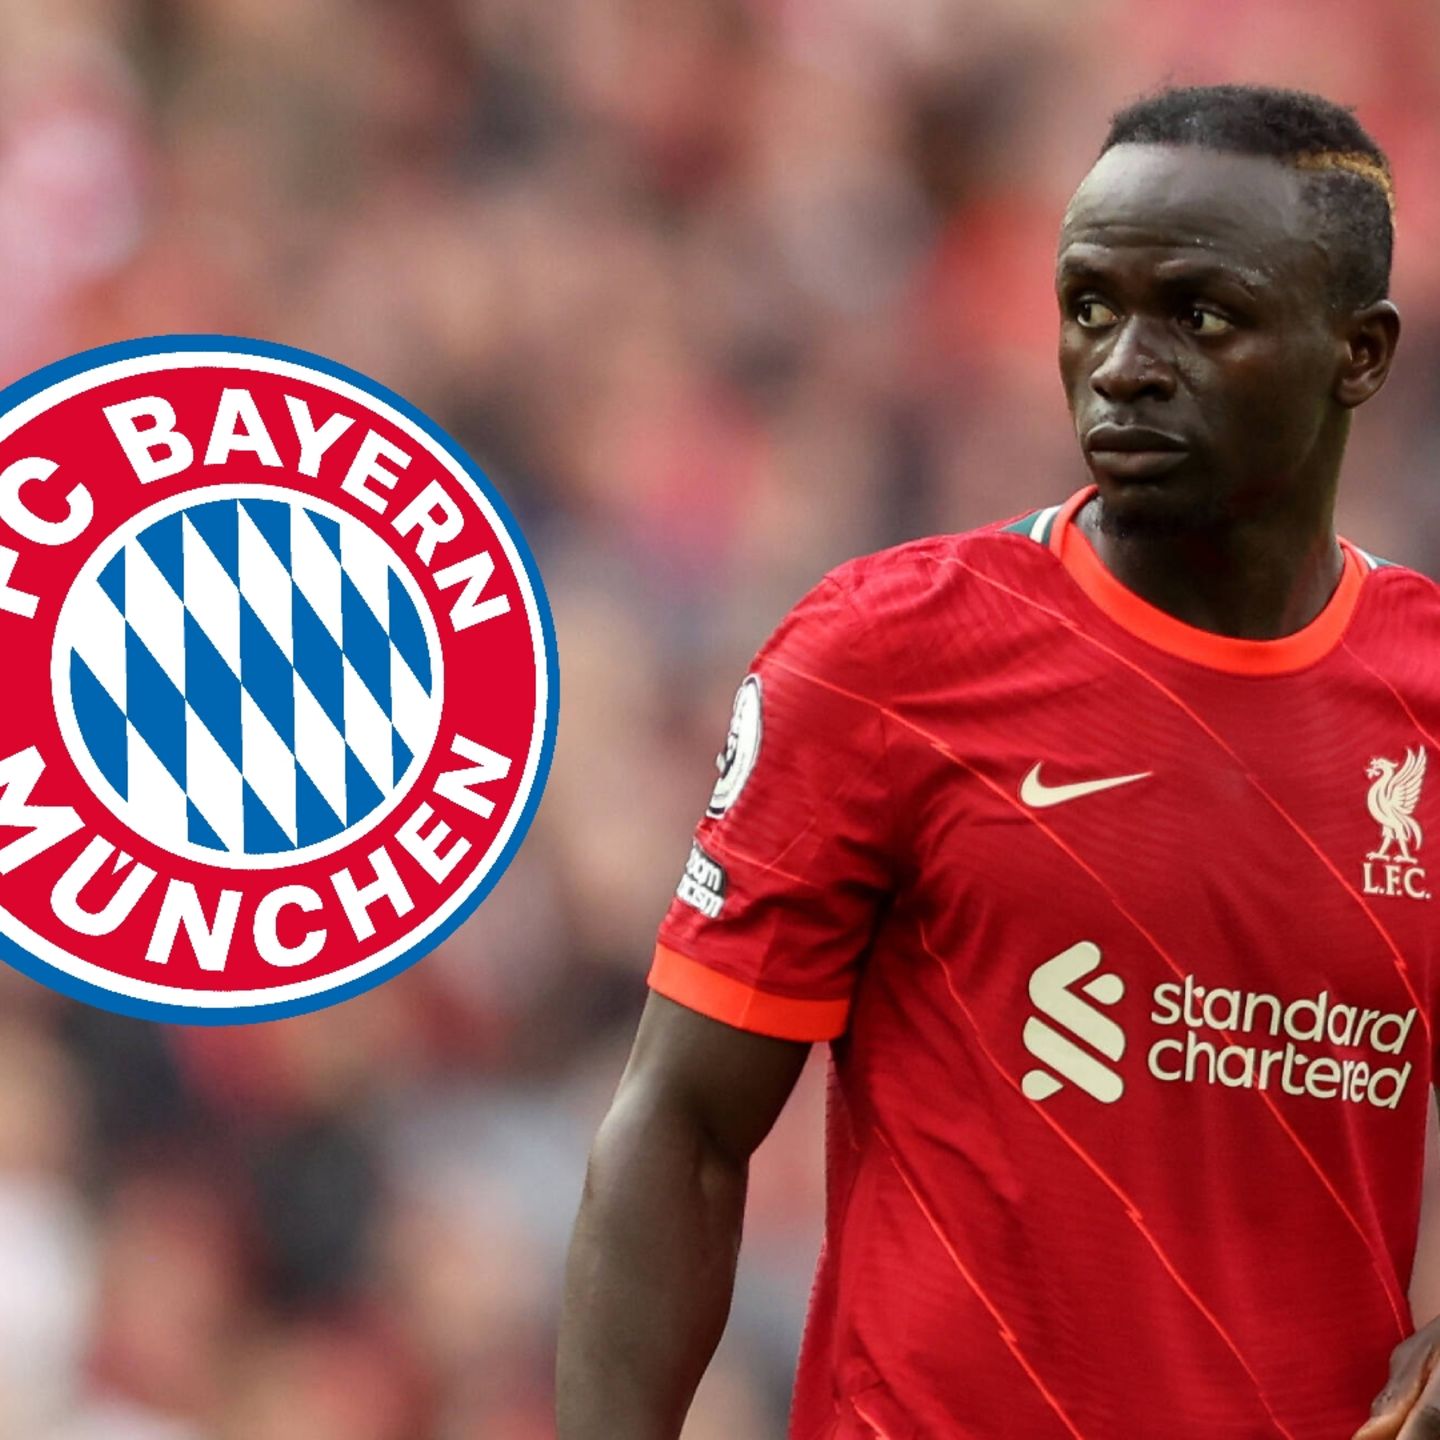 Liverpool-Star Sadio Mane wohl offen für Wechsel zu Bayern München |  STERN.de